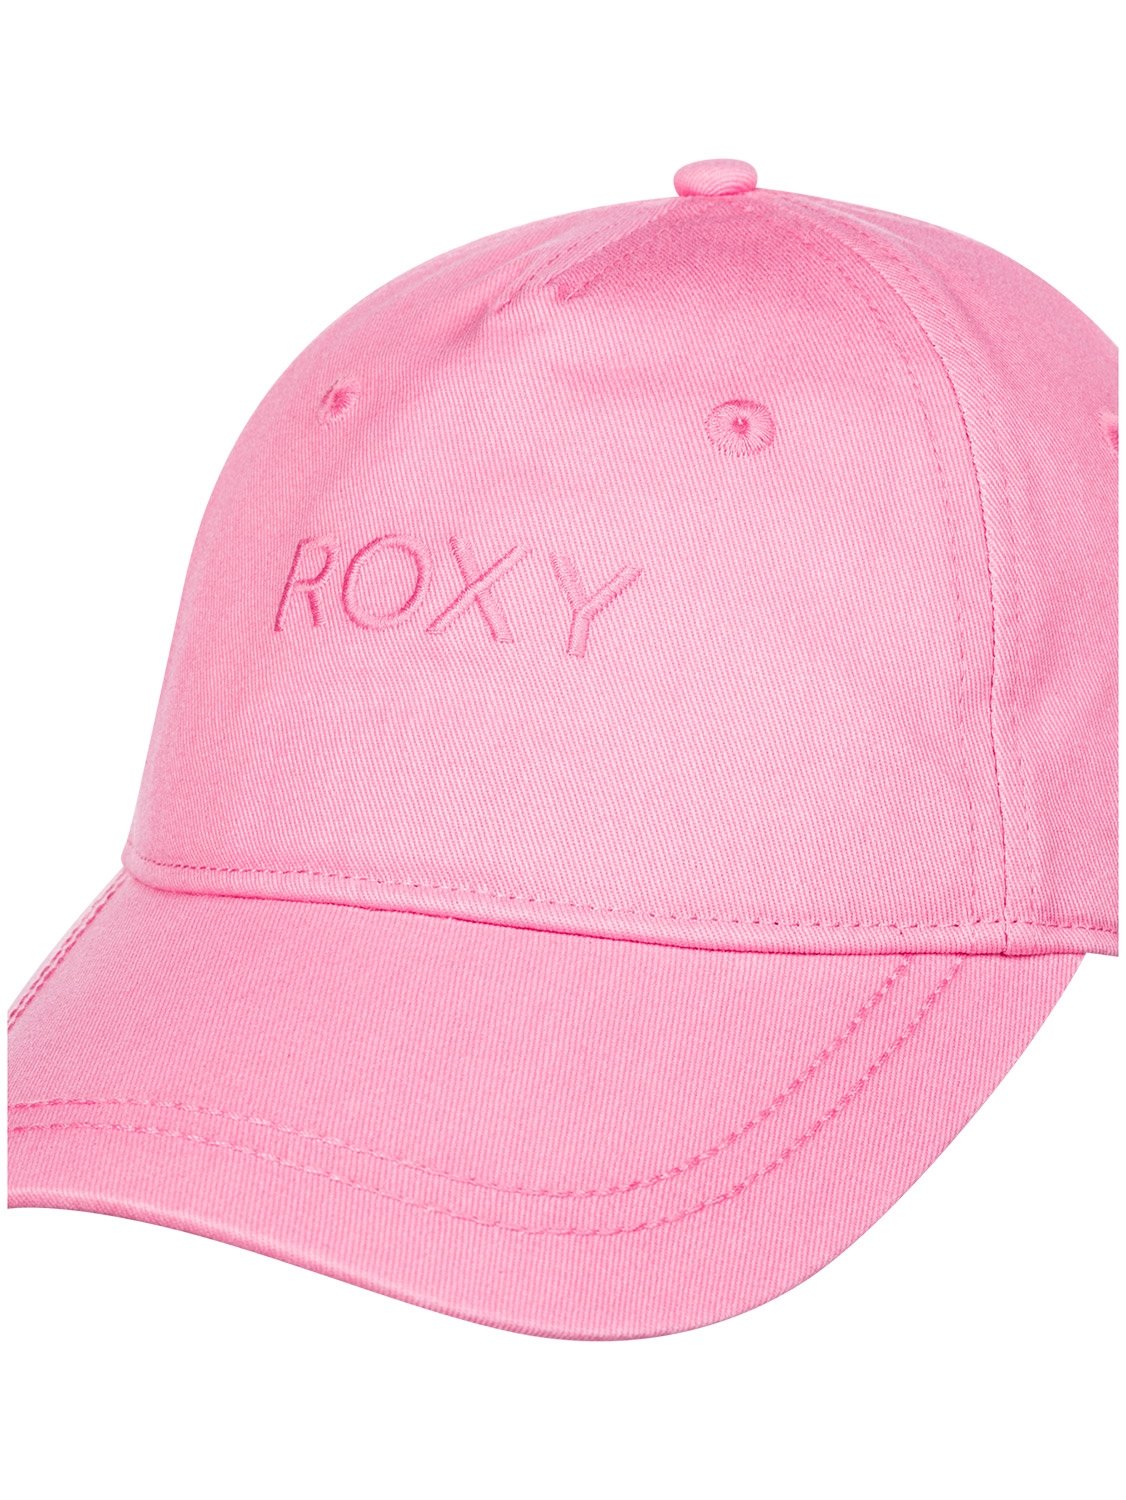 Roxy Ladies Dear Believer Cap